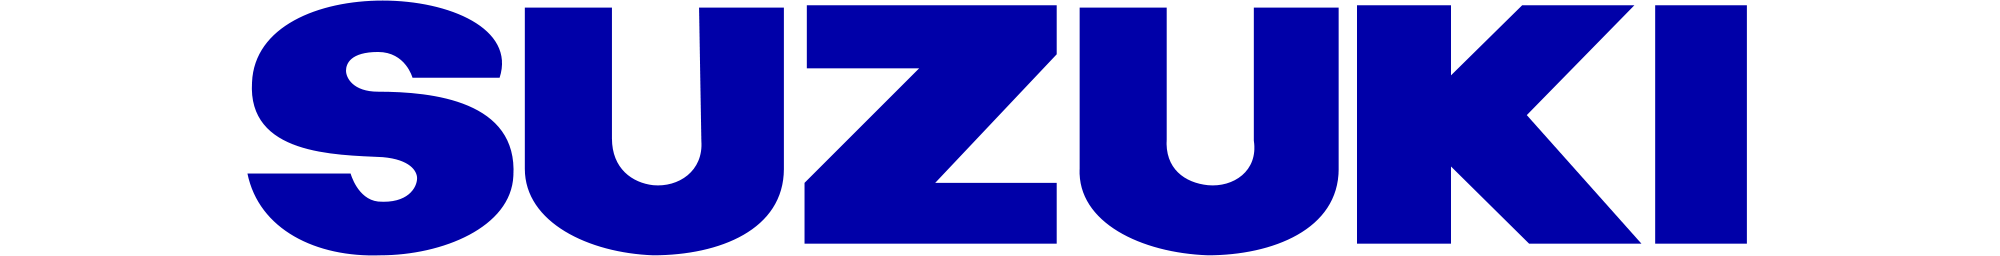 Suzuki Logo Blue Background PNG image